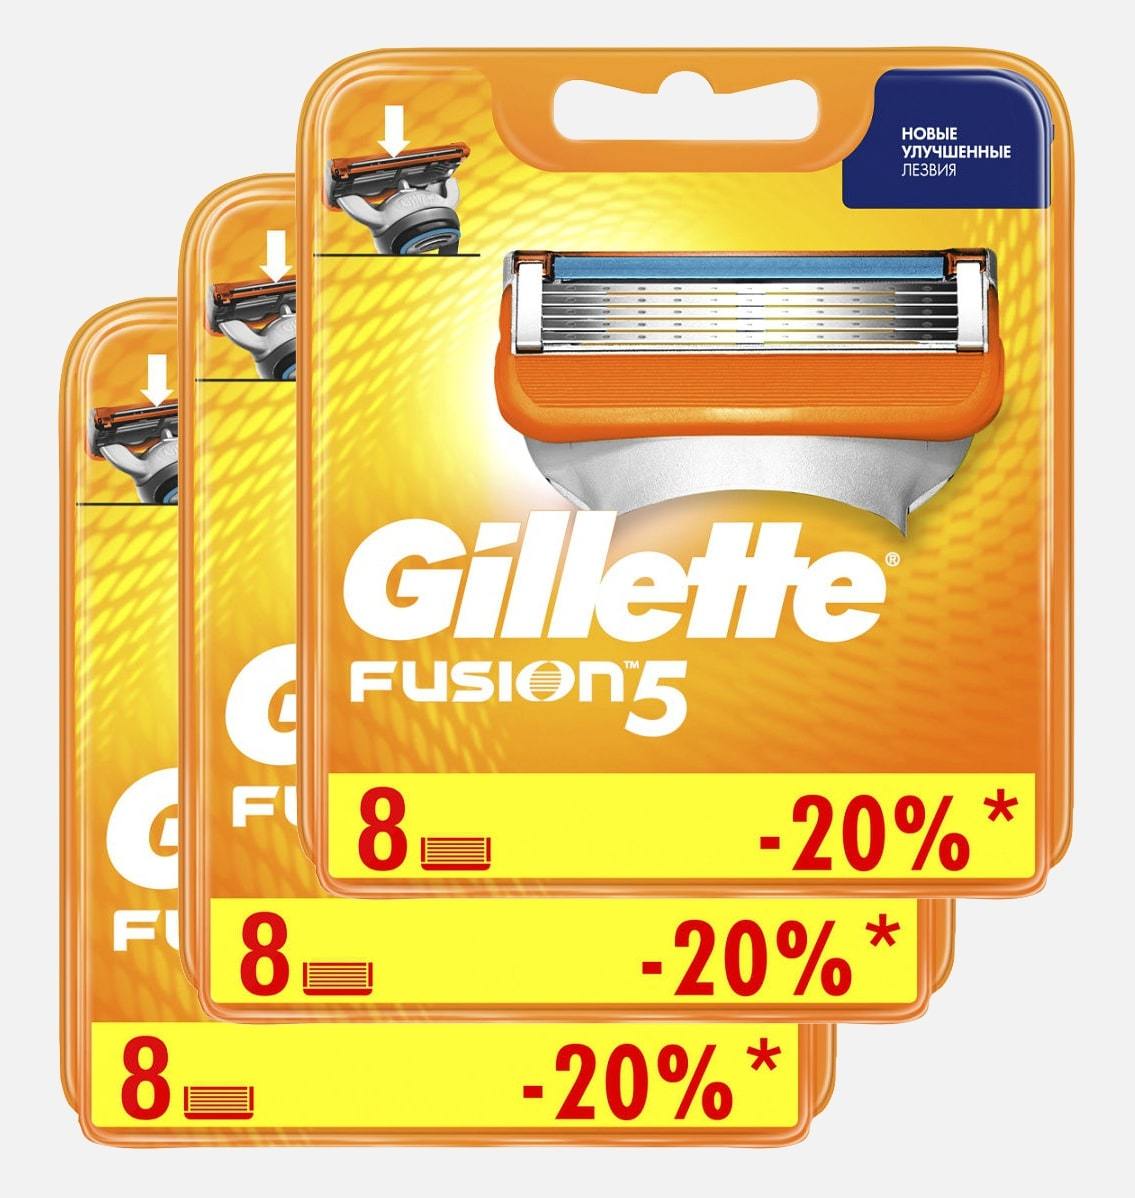 Сменные кассеты для бритья Gillette Fusion комплект (3х8) 24шт. Цена за 1 пачку, с учетом скидки 6%. - 1363 руб.